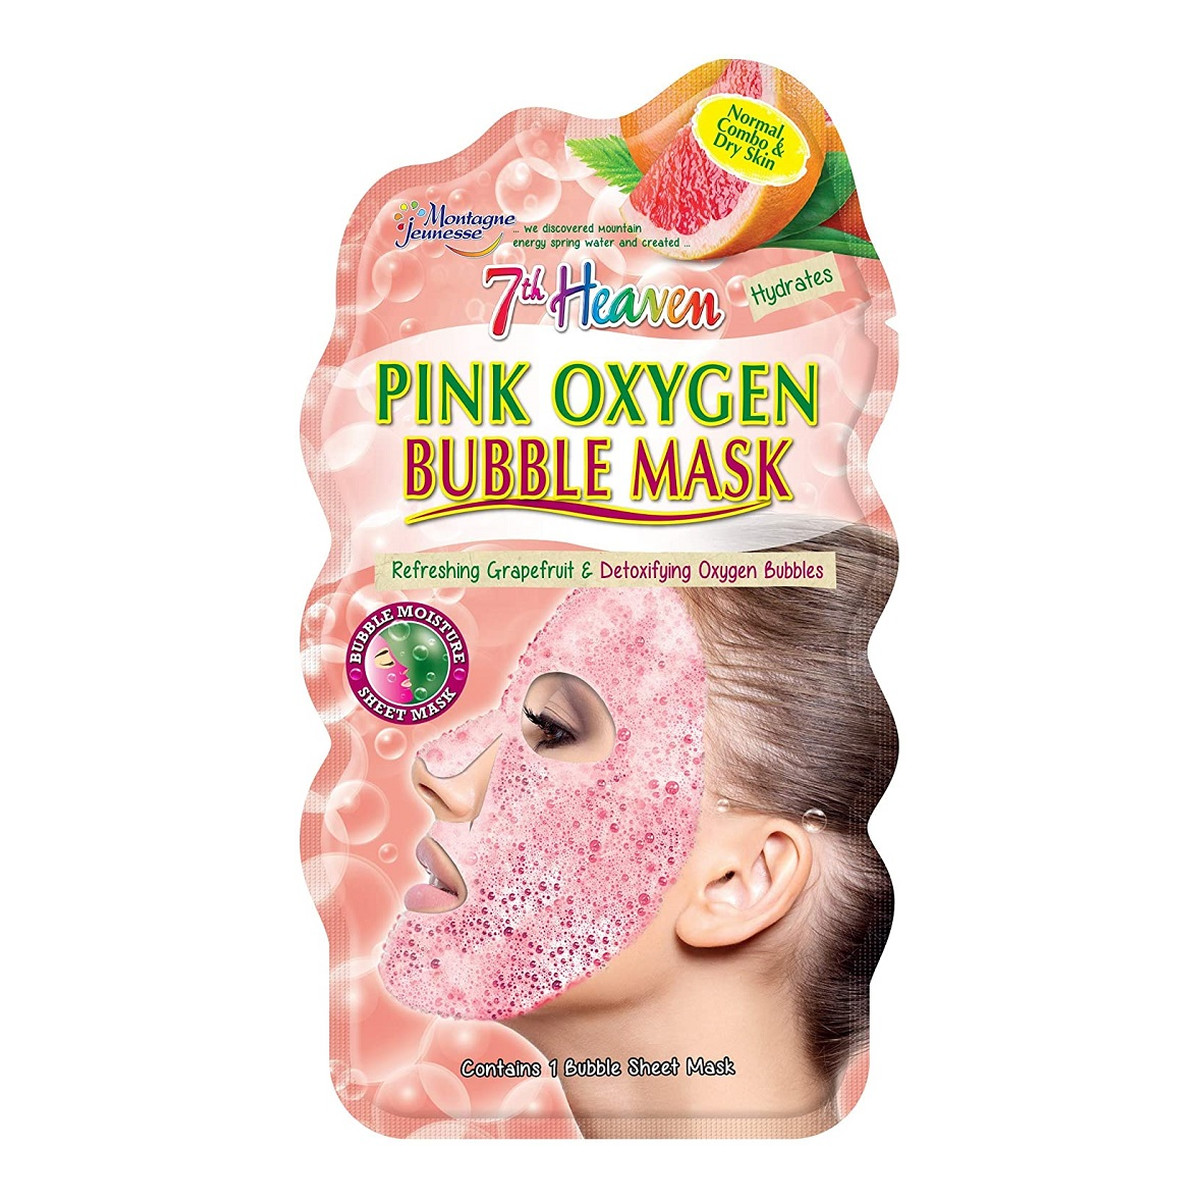 7th Heaven Pink Oxygen Bubble Mask nawilżająca maseczka bąbelkowa w płachcie skóra normalna, mieszana i sucha Grapefruit